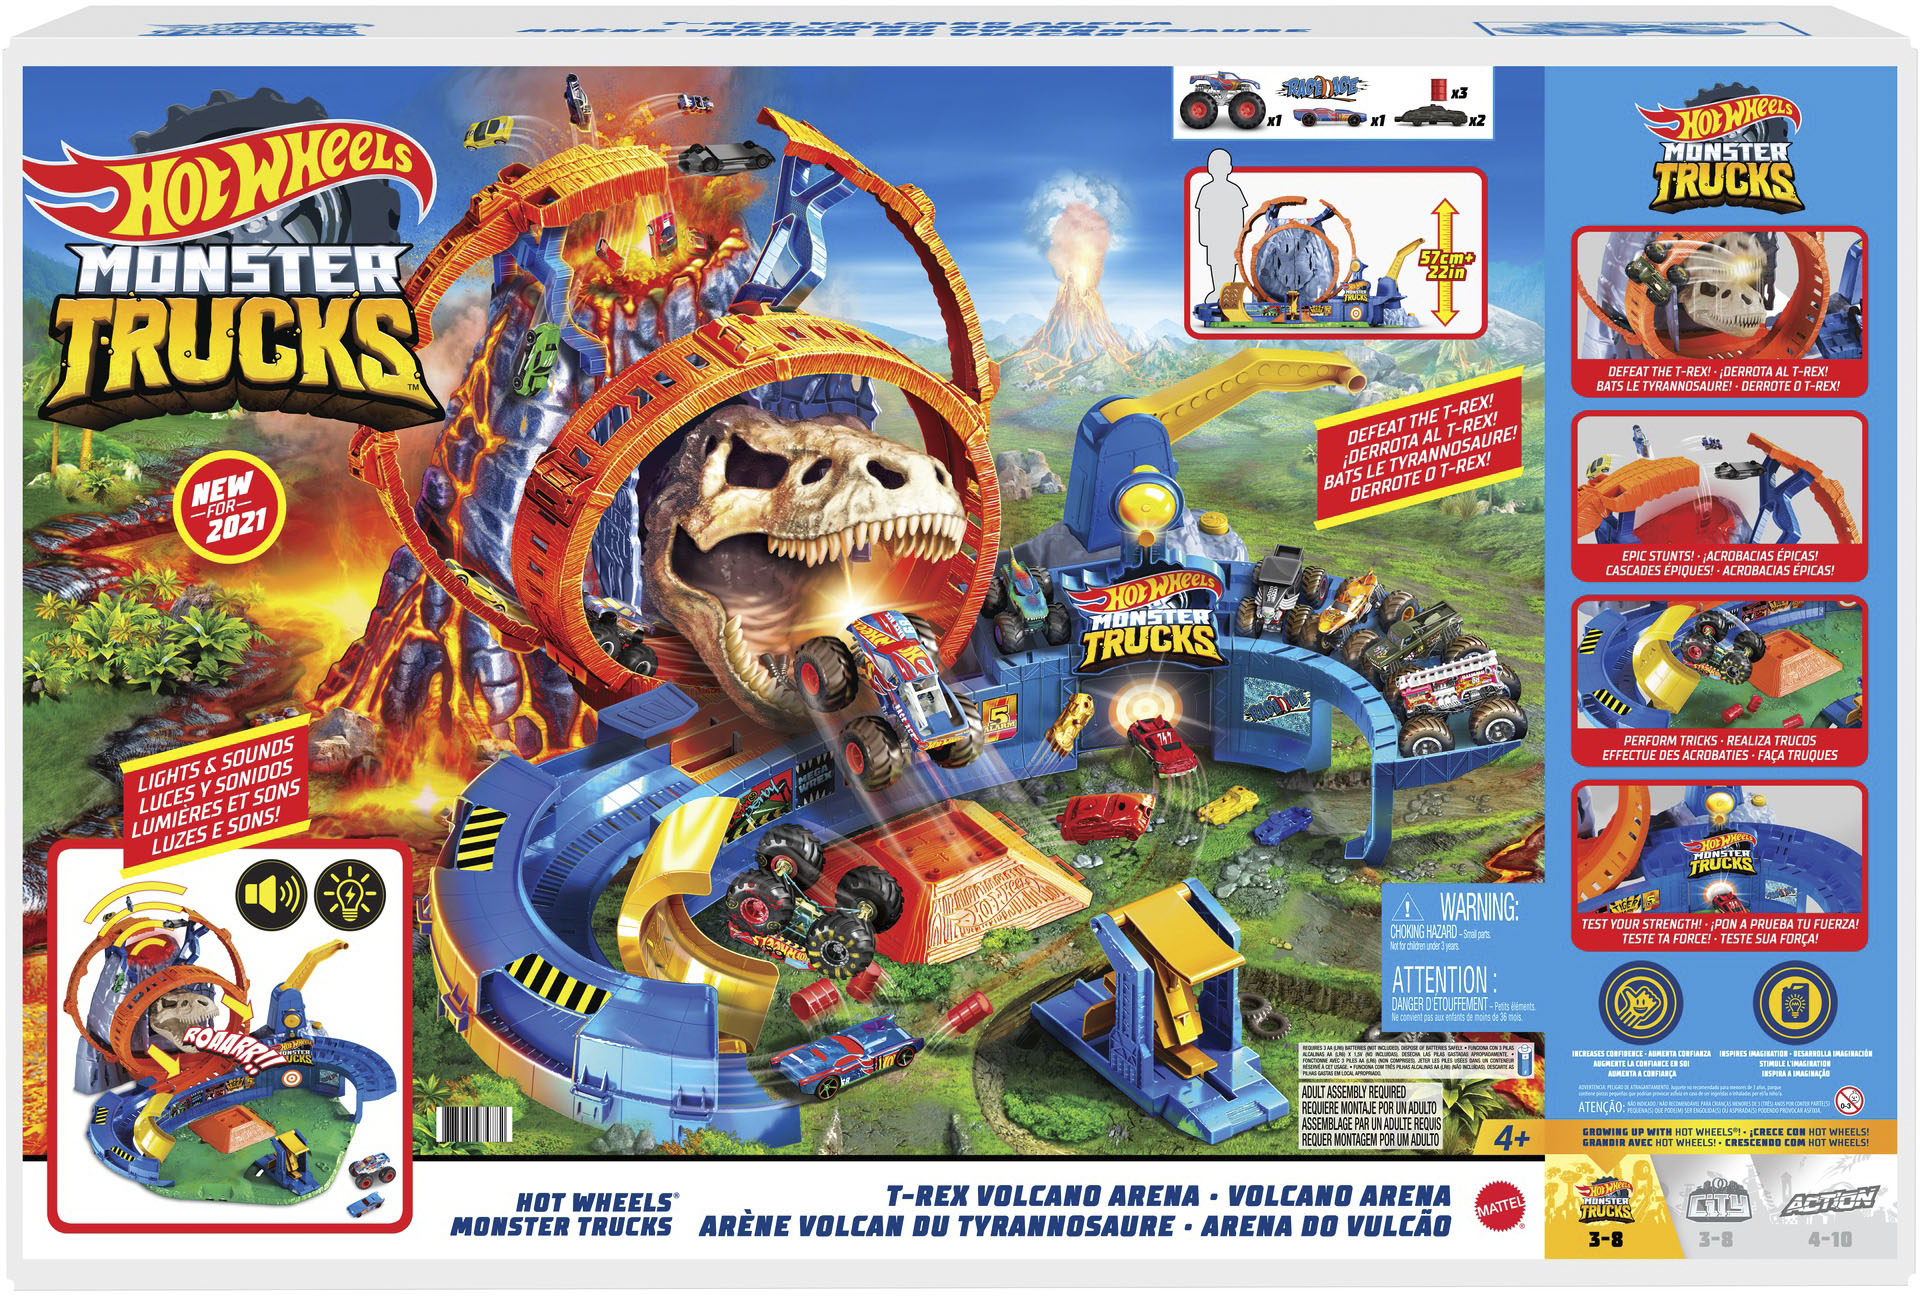 Subdividir Dictar Prueba de Derbeville Hot Wheels Monster Trucks T-Rex Volcano Arena Playset GYL14 - Best Buy